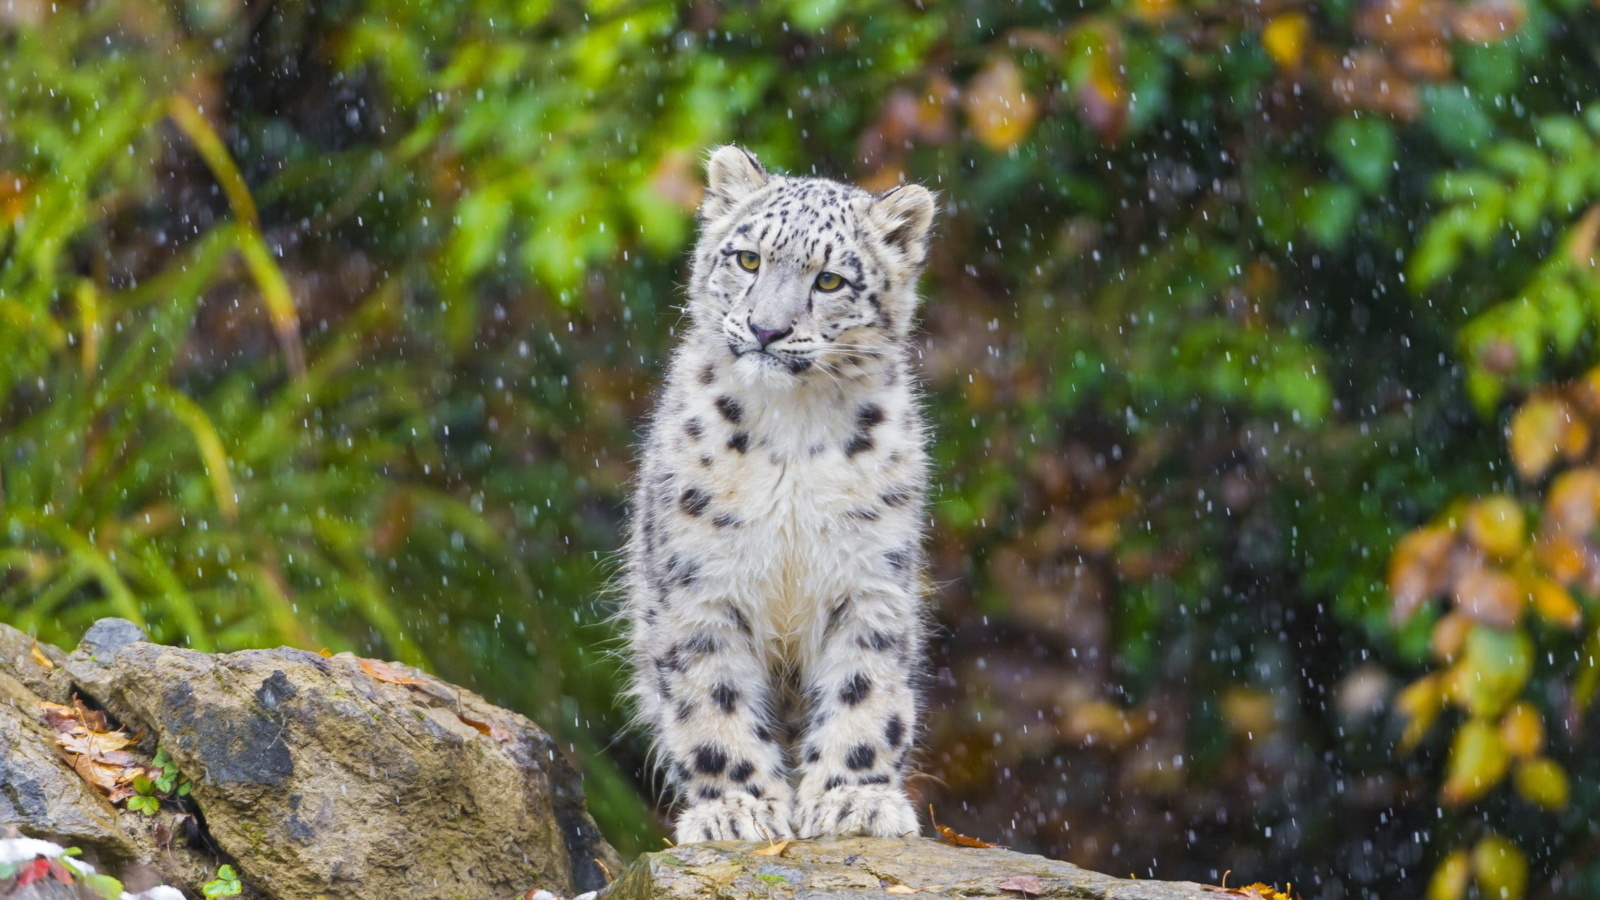 Snow Leopard in Zoo wallpaper 1600x900